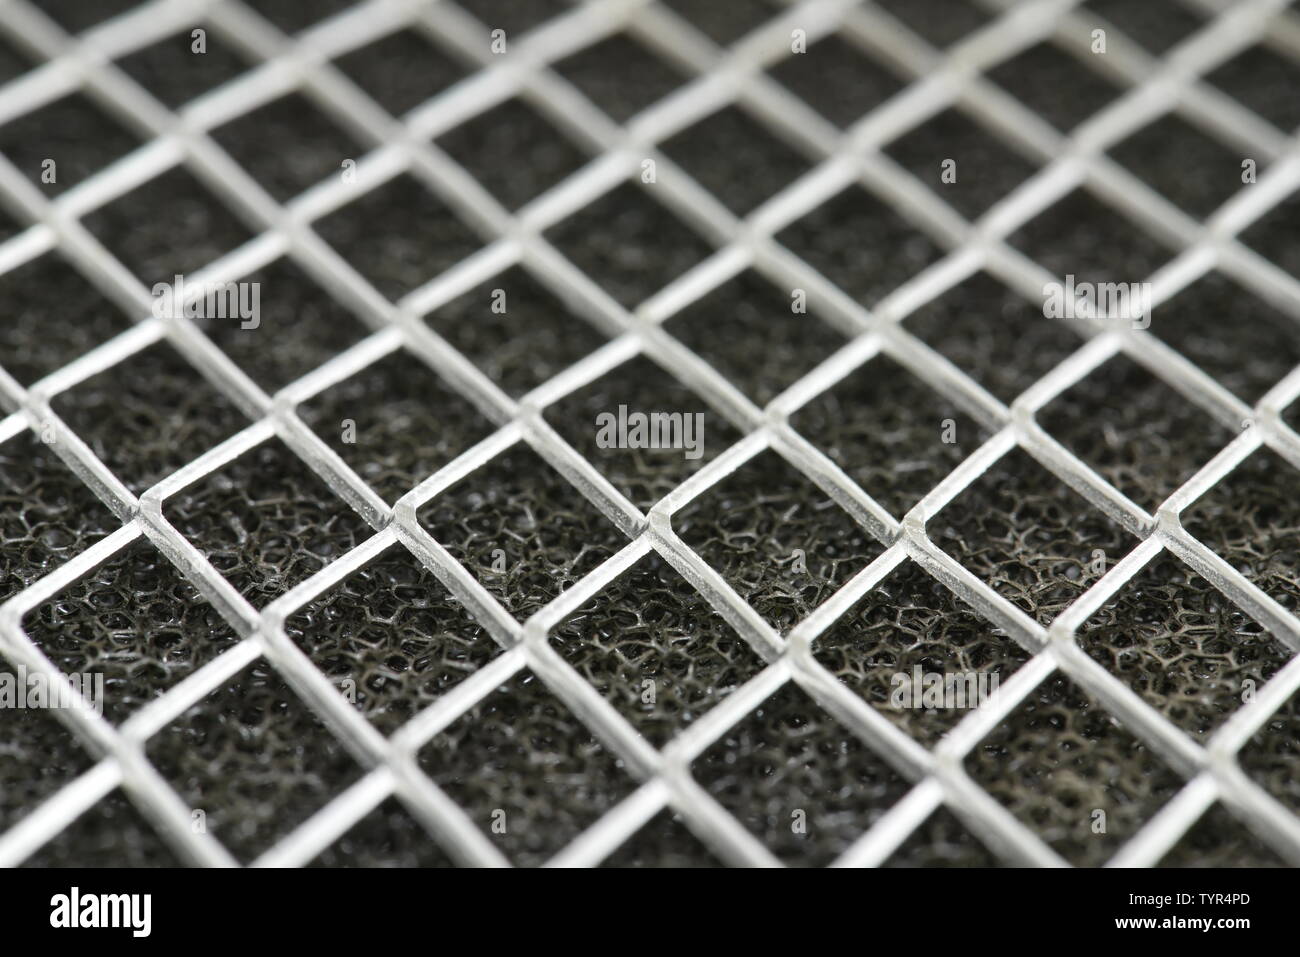 Luftfilter reinigen, mit Raster in der Perspektive Stockfotografie - Alamy